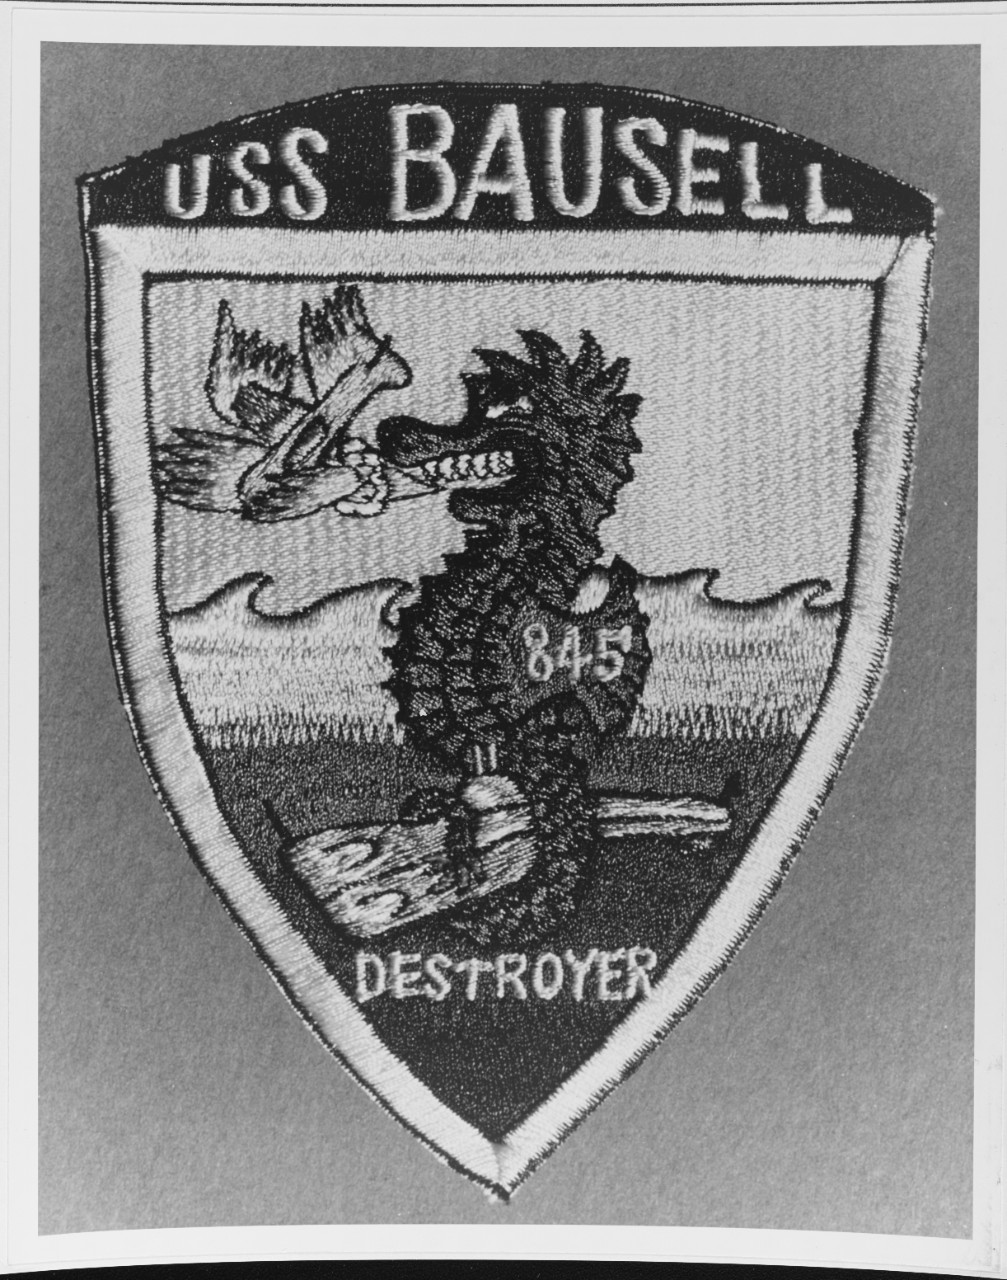 Insignia: USS BAUSELL (DD-845)